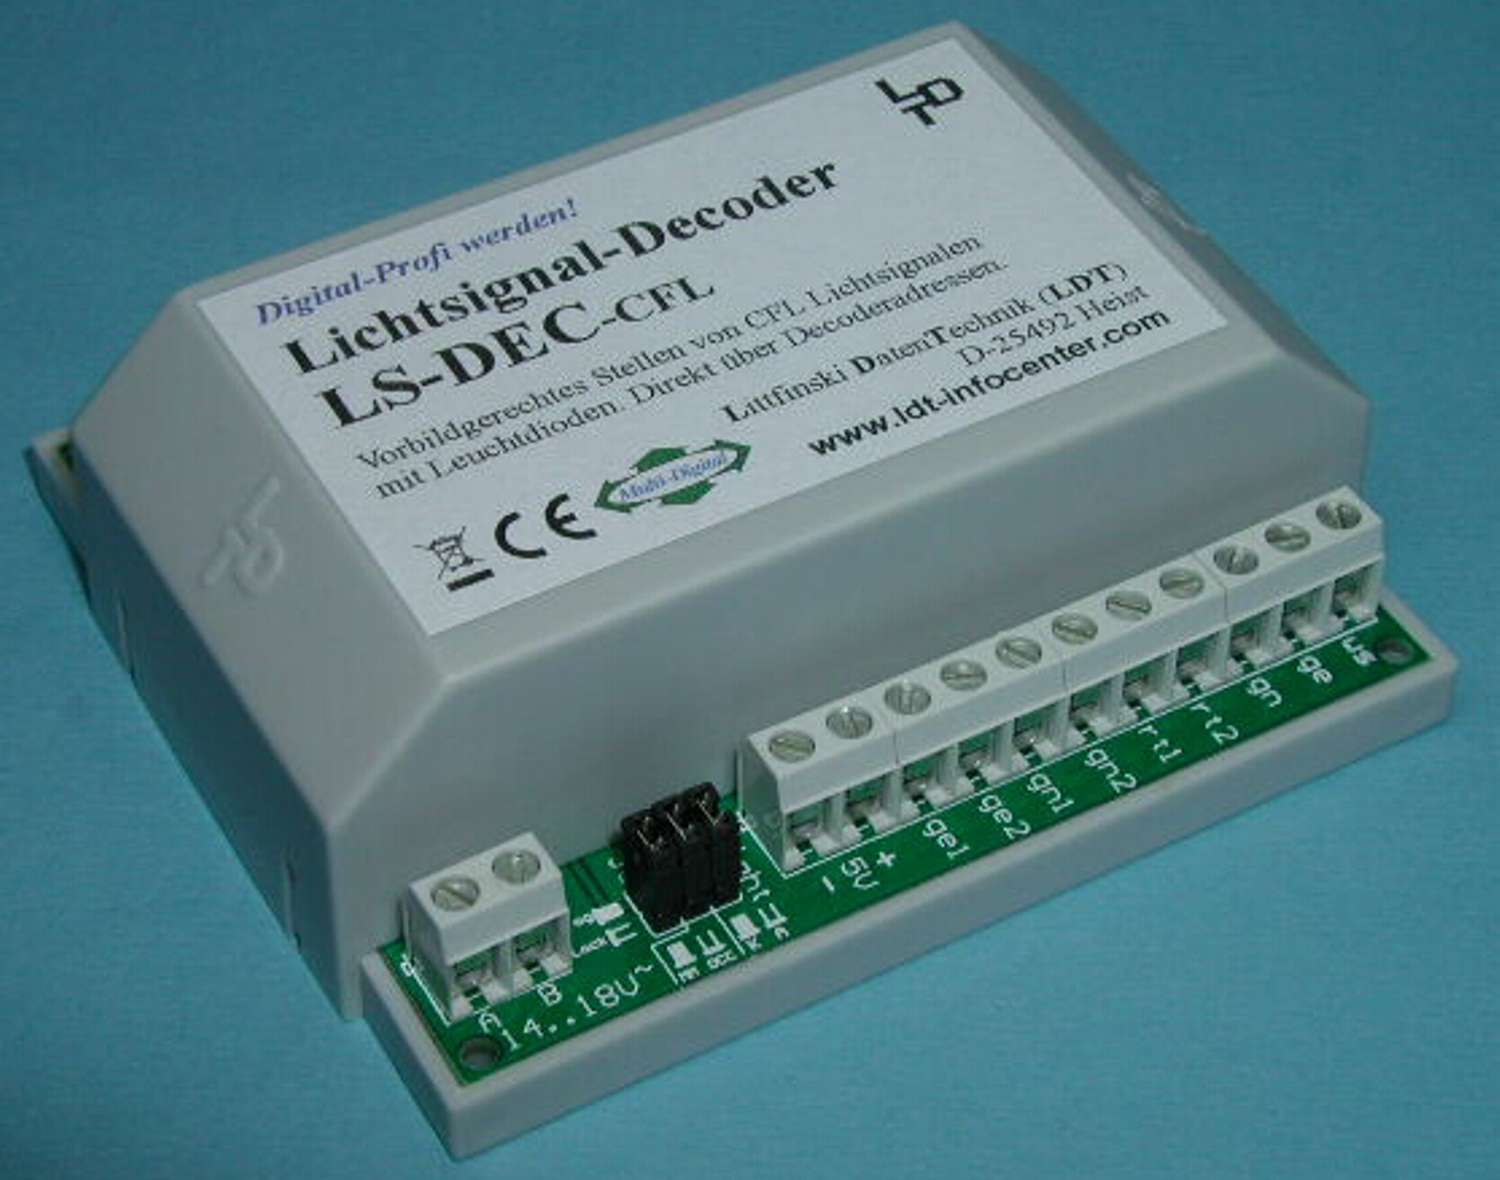 Littfinski 514013 - LS-DEC-CFL-G - Lichtsignaldecoder, 4-fach, für CFL-Signale, Fertigmodul im Gehäuse